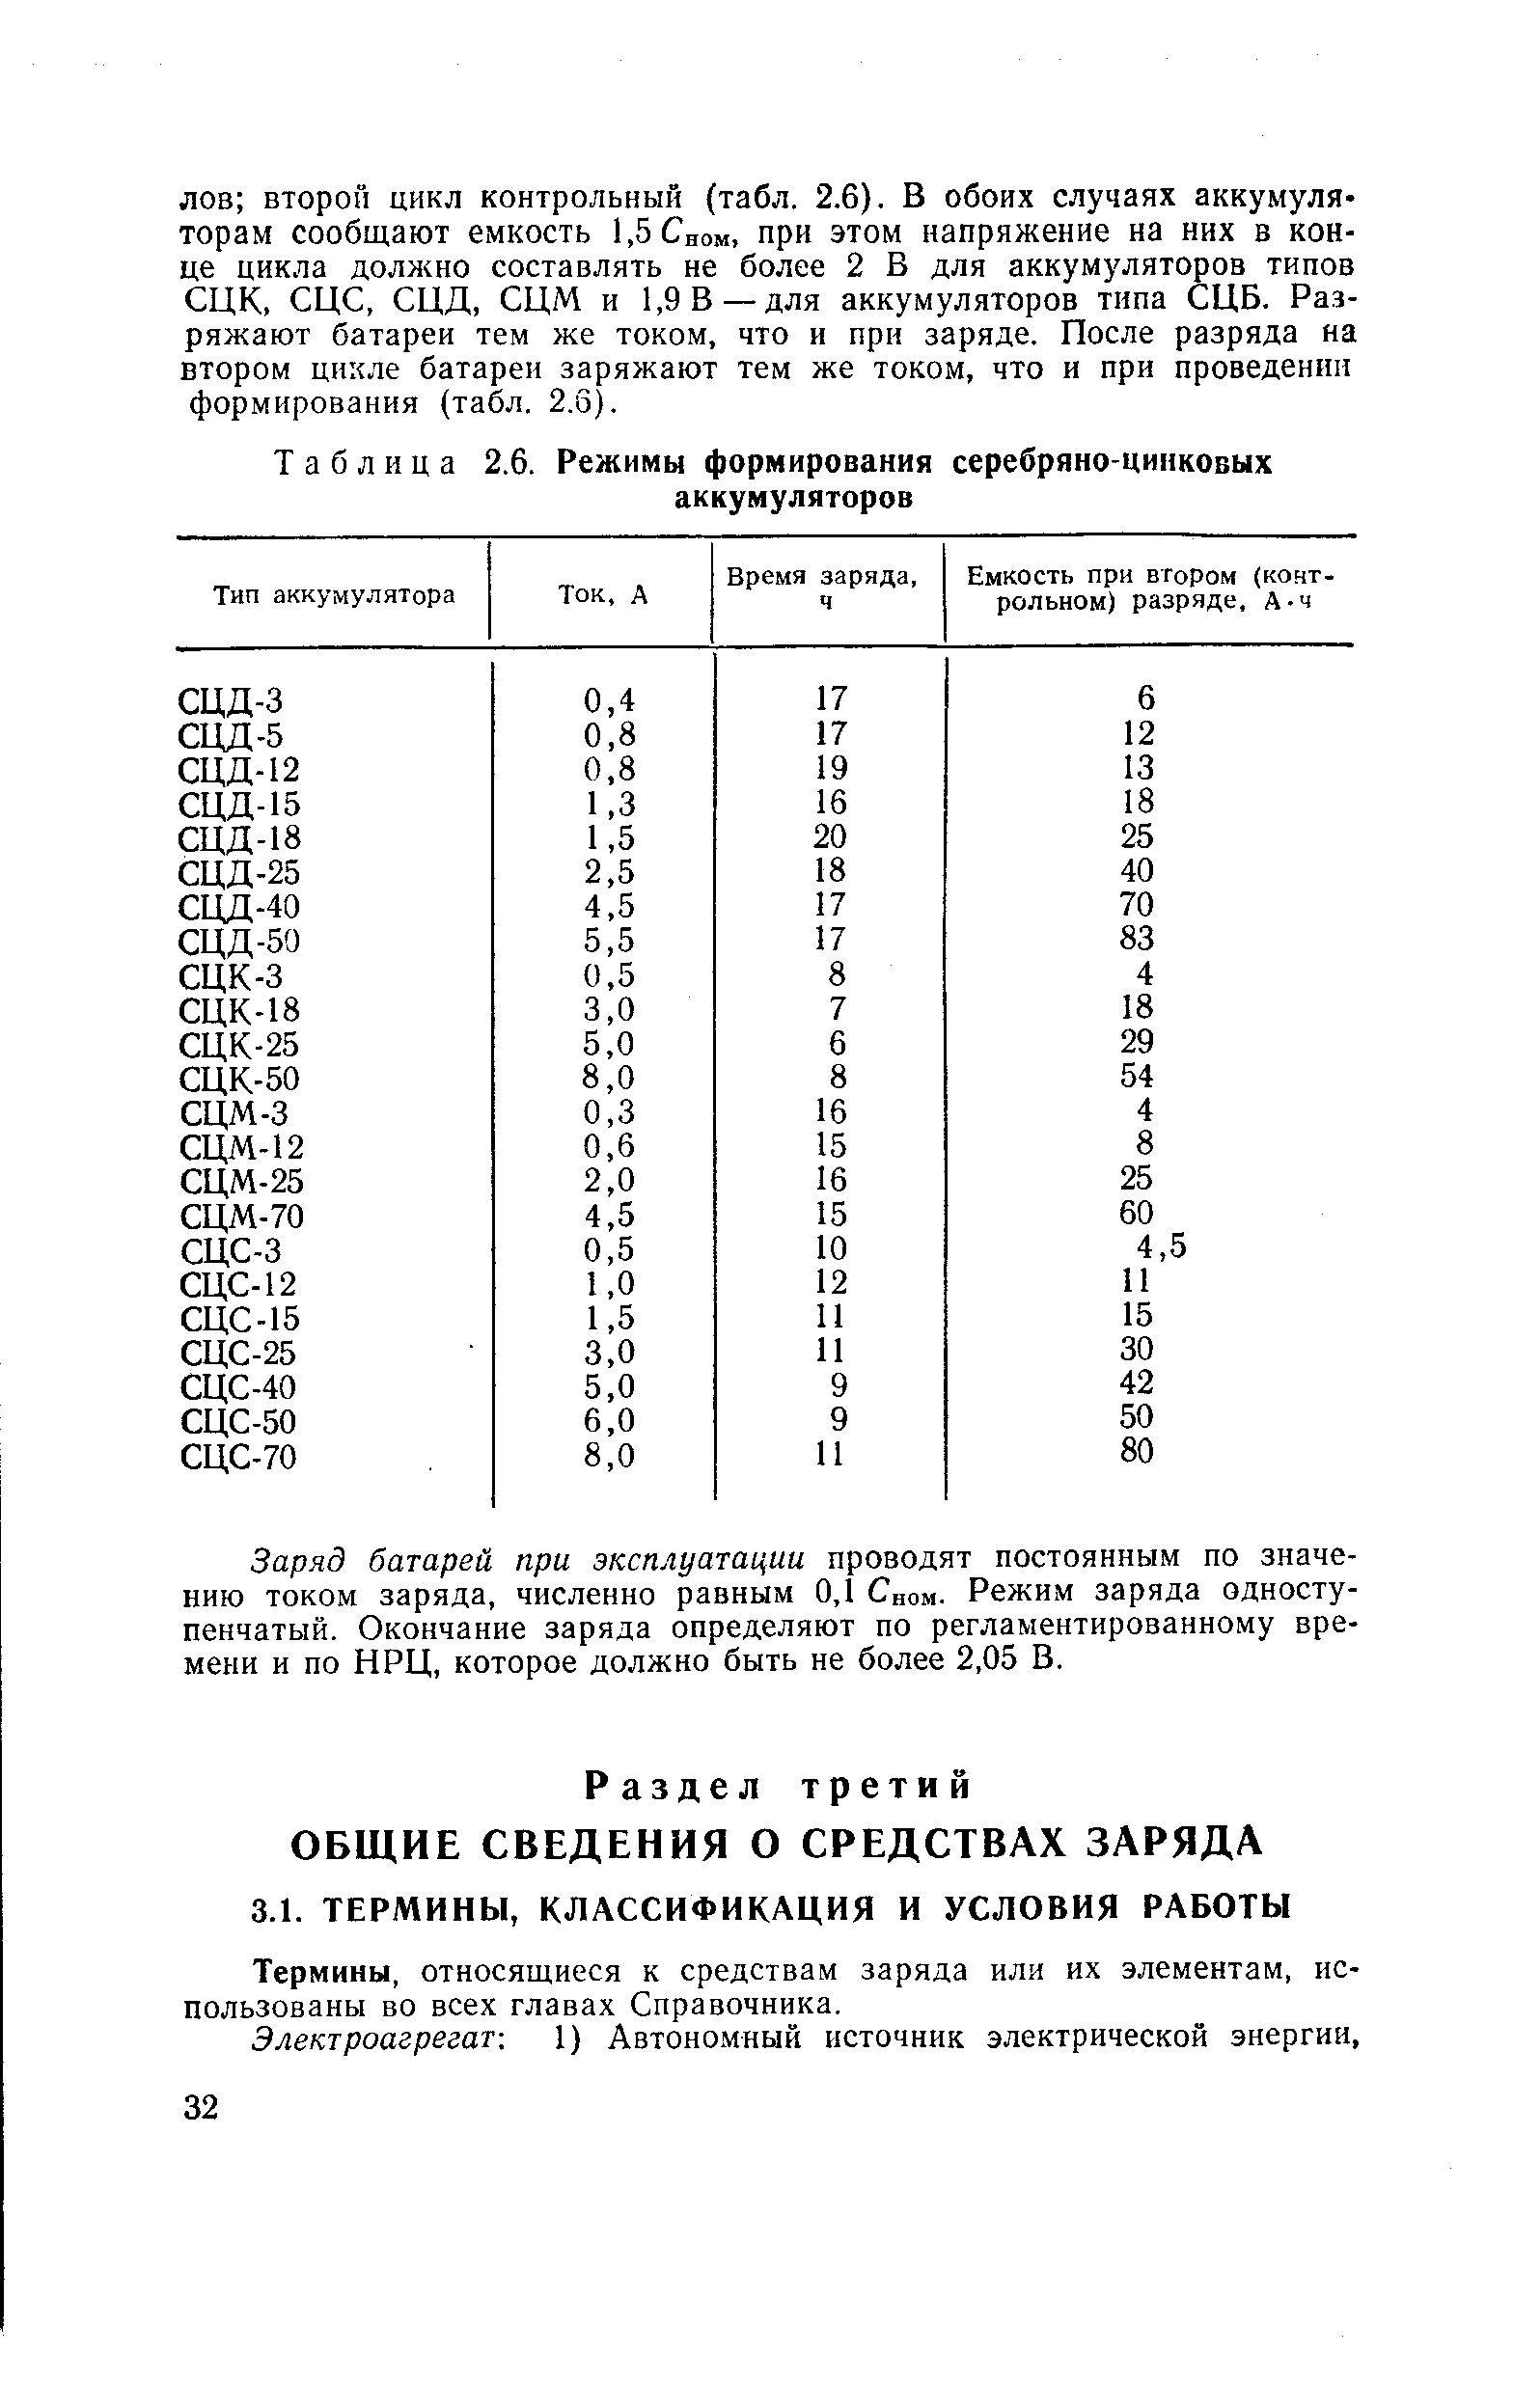 Таблица 2.6. Режимы формирования серебряно-цинковых аккумуляторов
